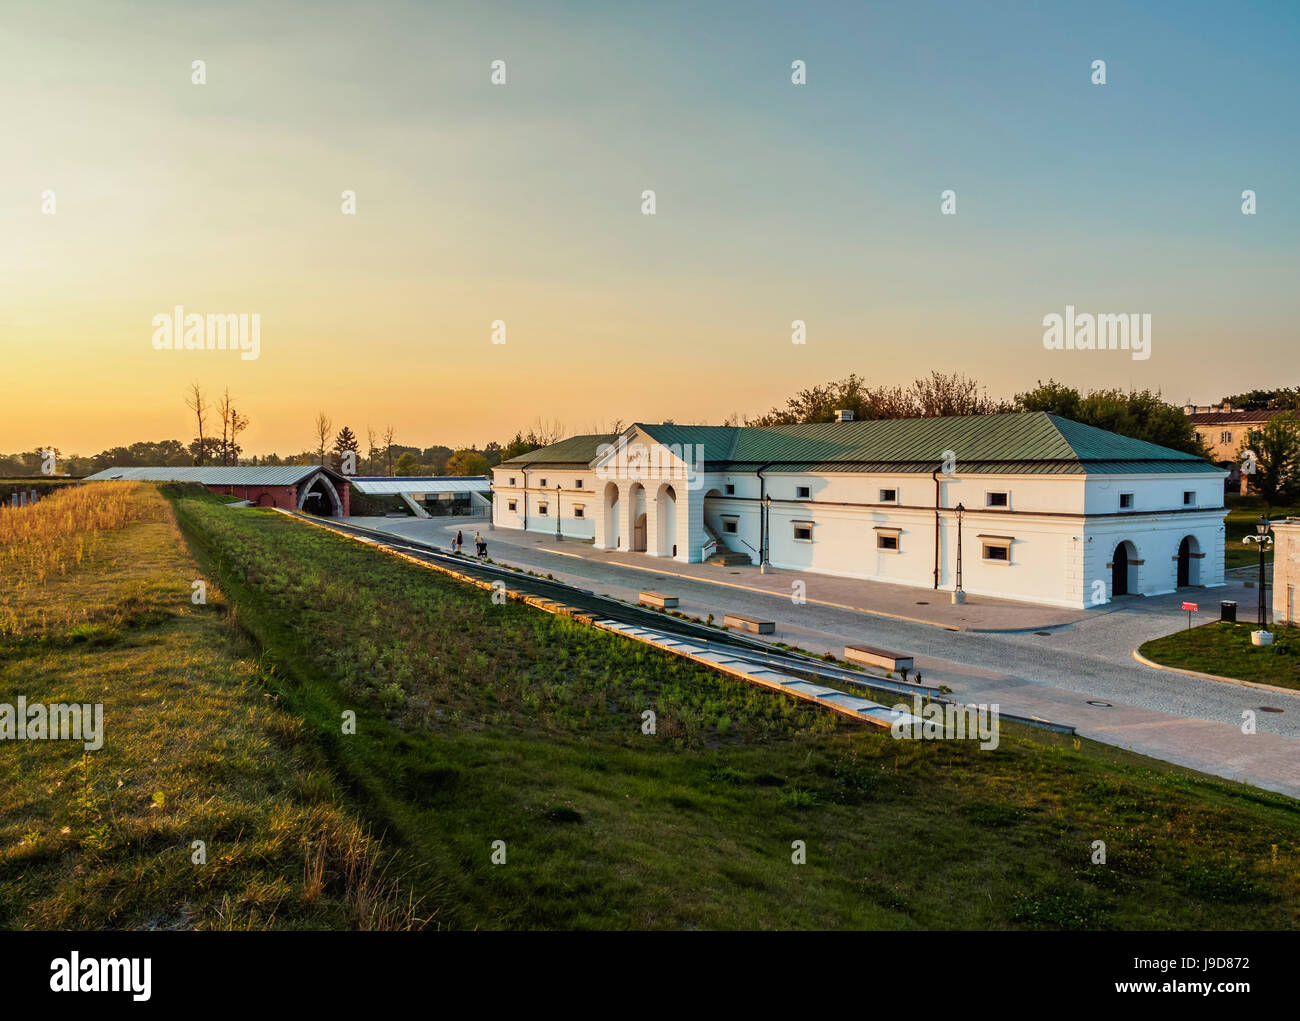 Arsenal Museum, Old Town, Zamosc, Lublin Voivodeship, Poland, Europe Stock Photo